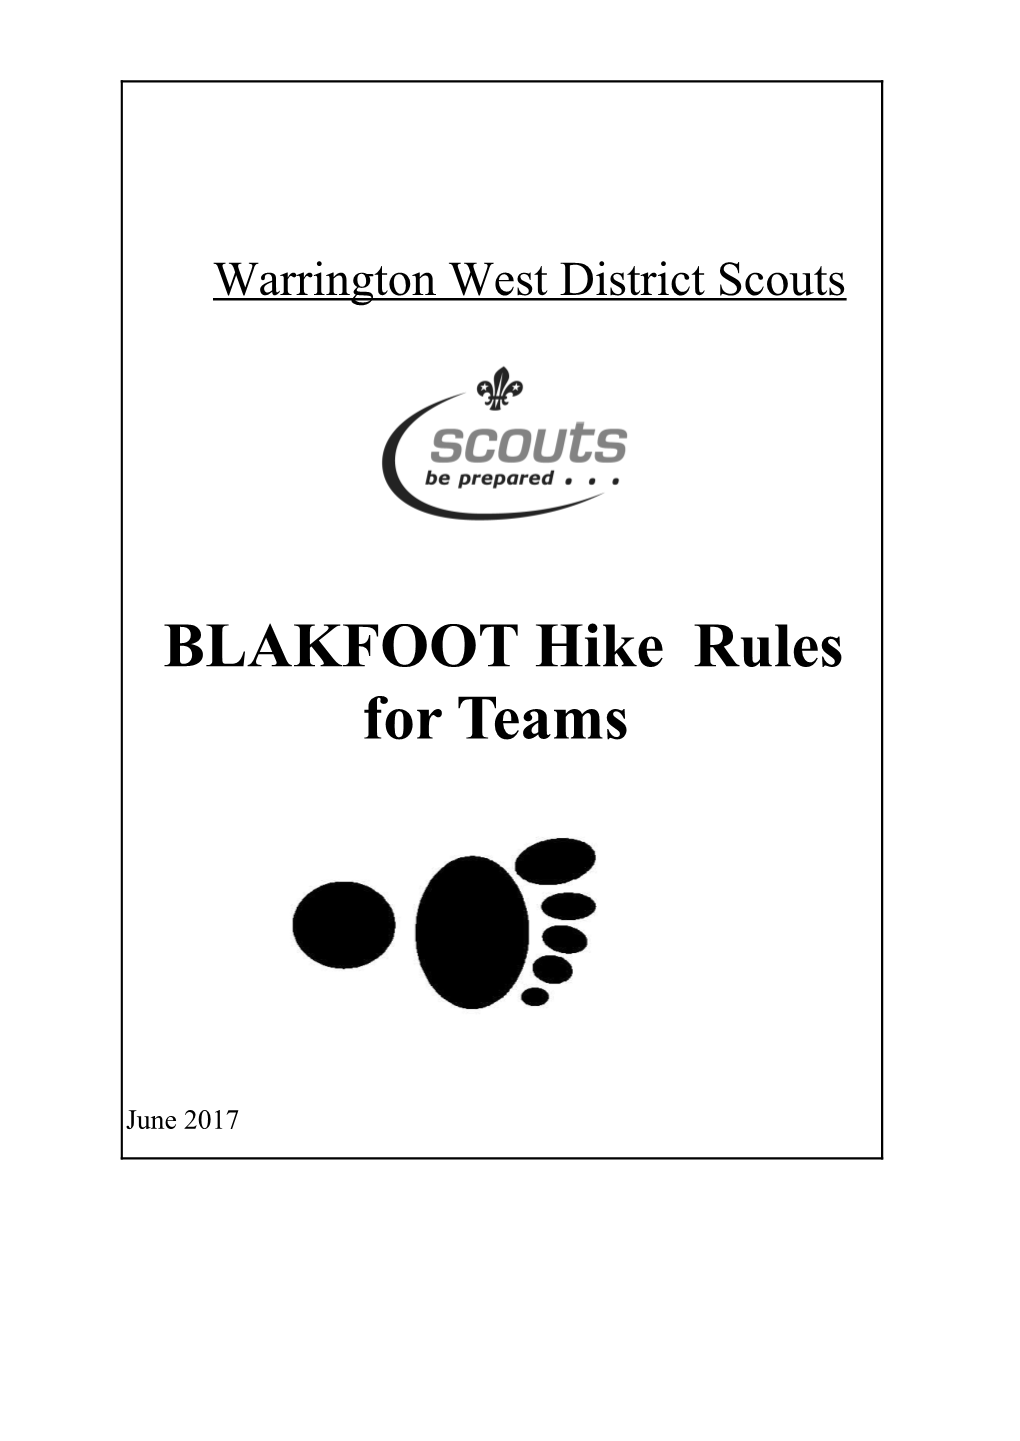 BLAKFOOT Hikerules for Teams